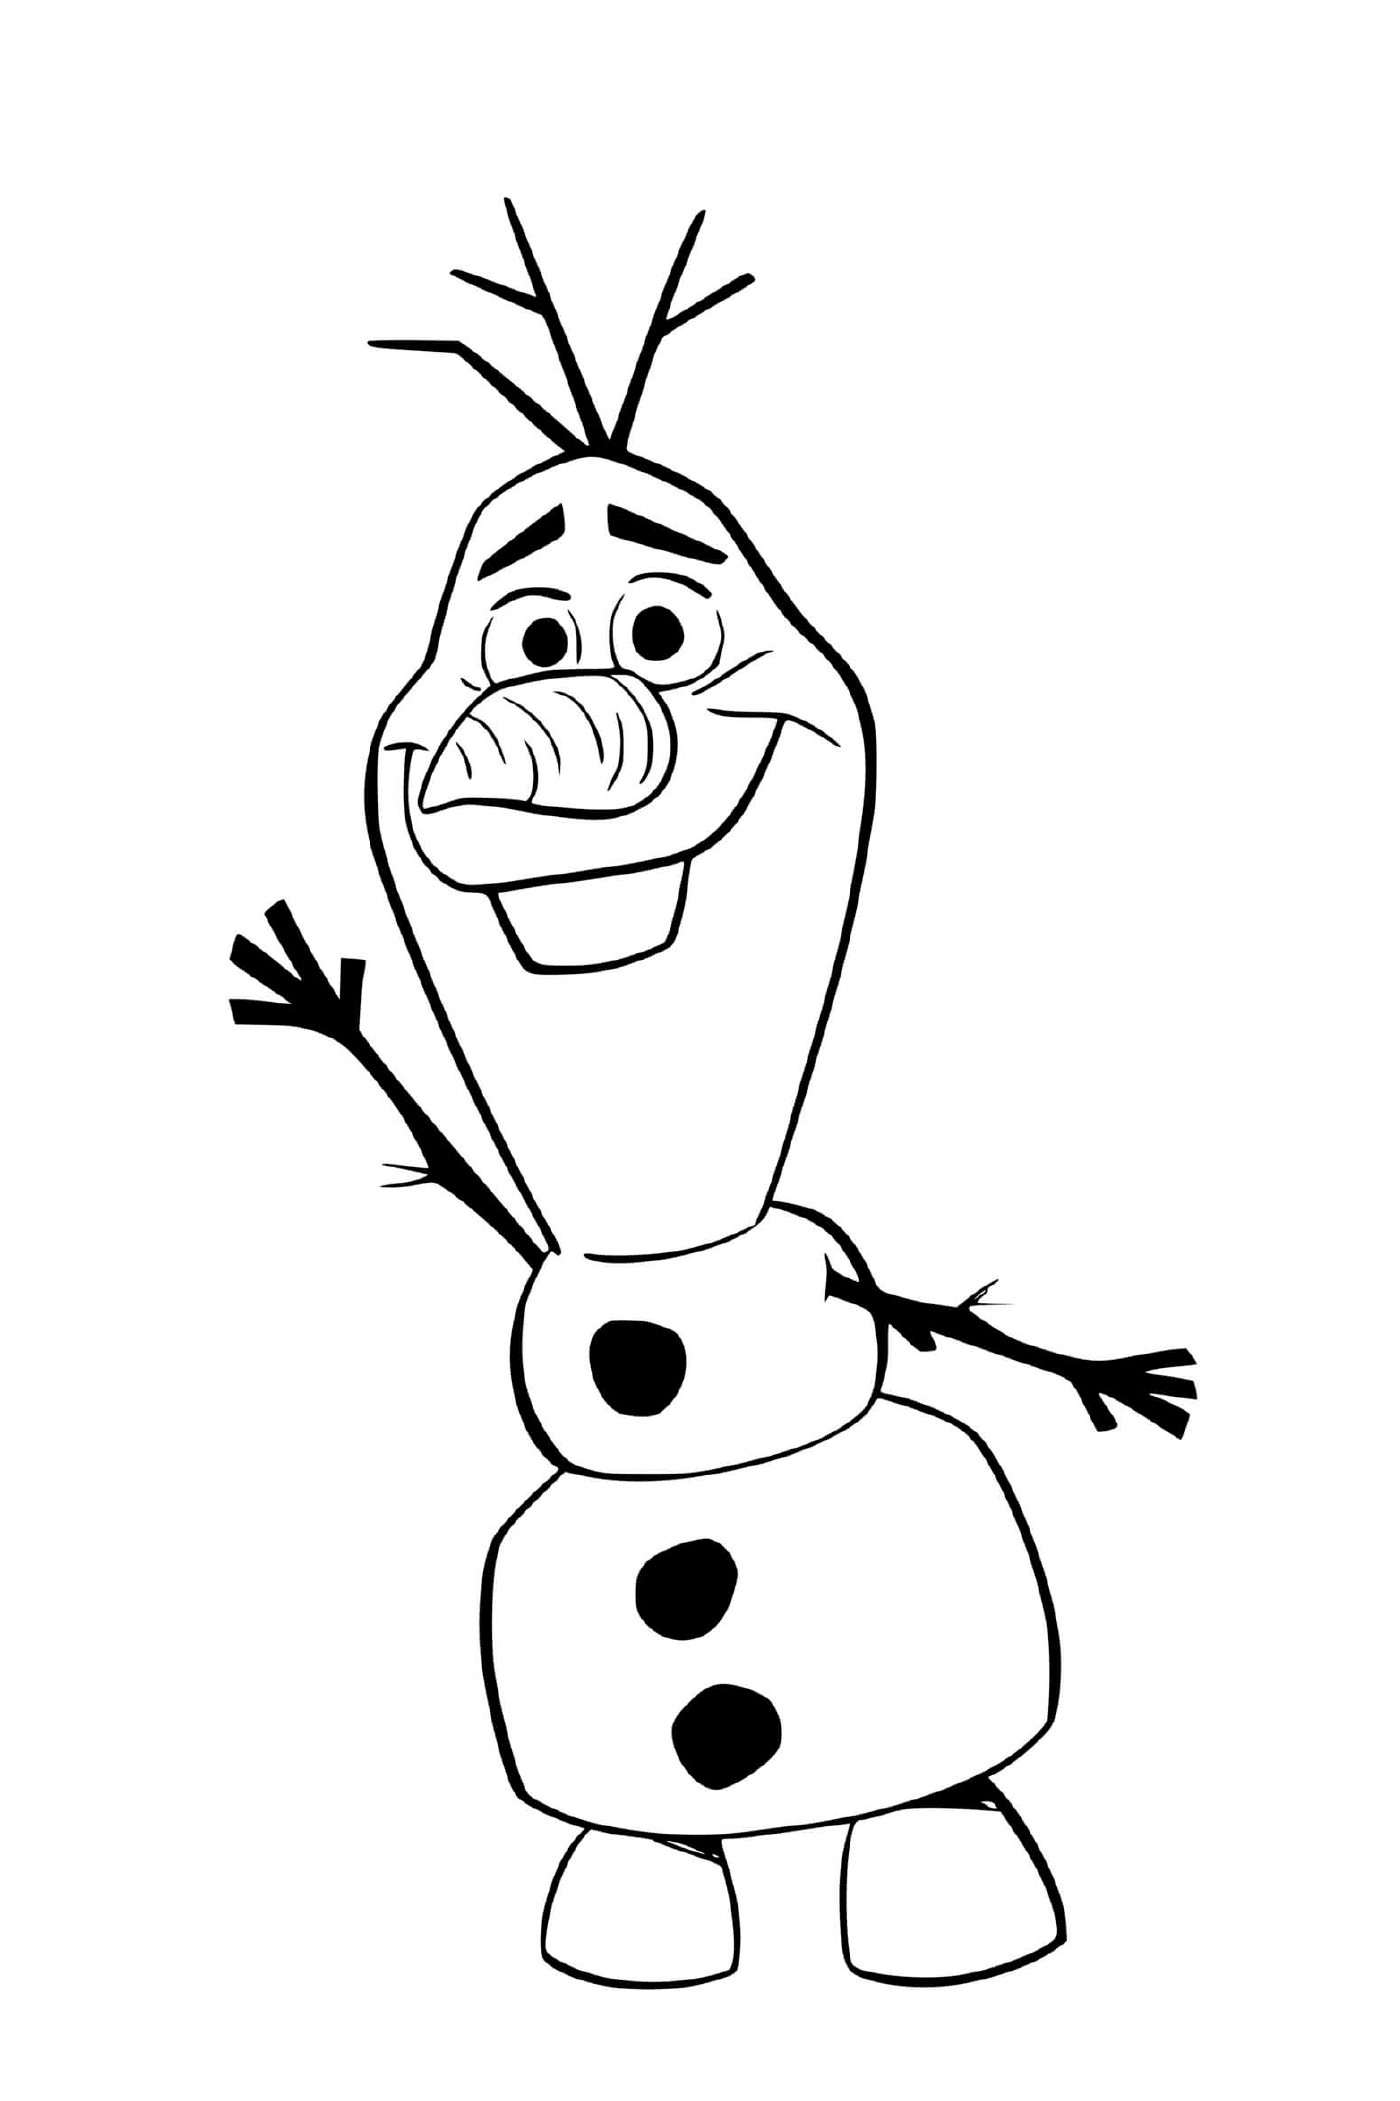  Olaf nel regno di Arendelle 